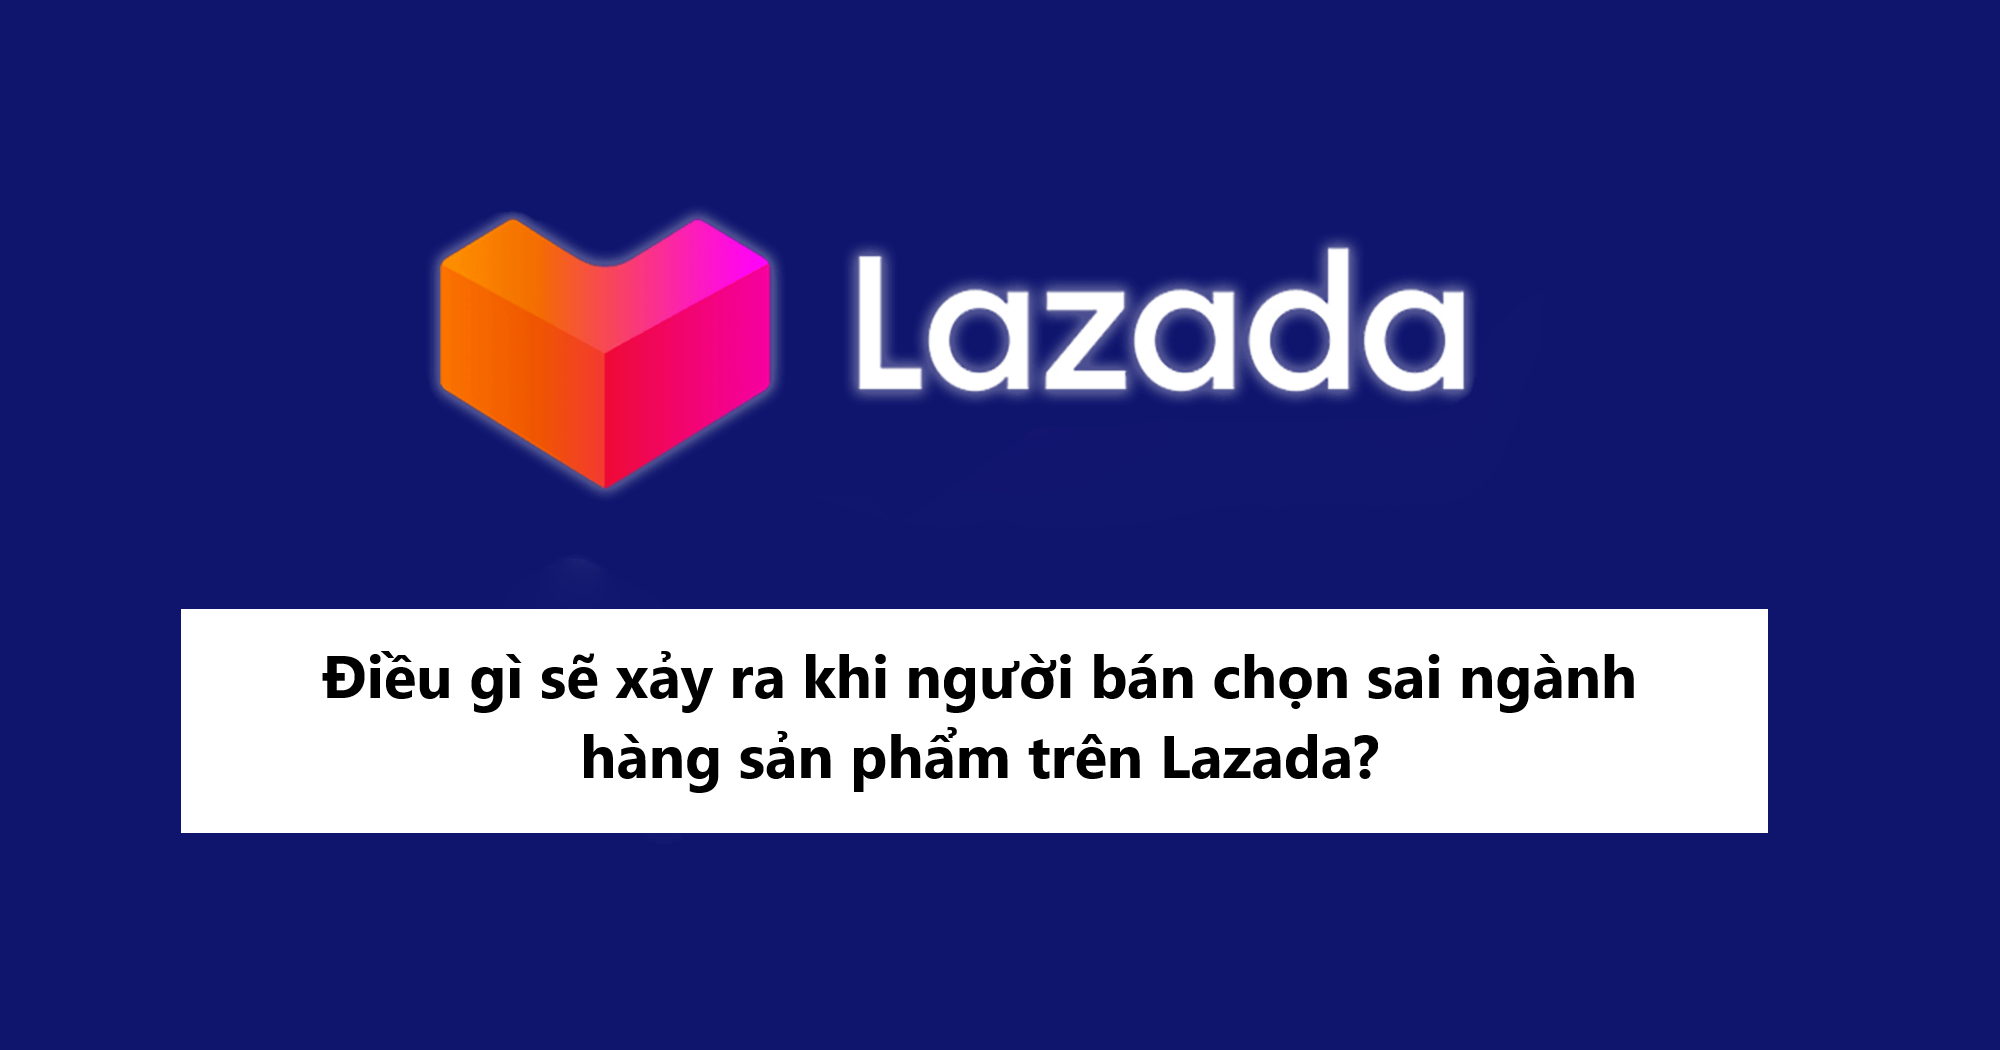 Điều gì xảy ra khi người bán chọn sai ngành hàng sản phẩm trên Lazada?